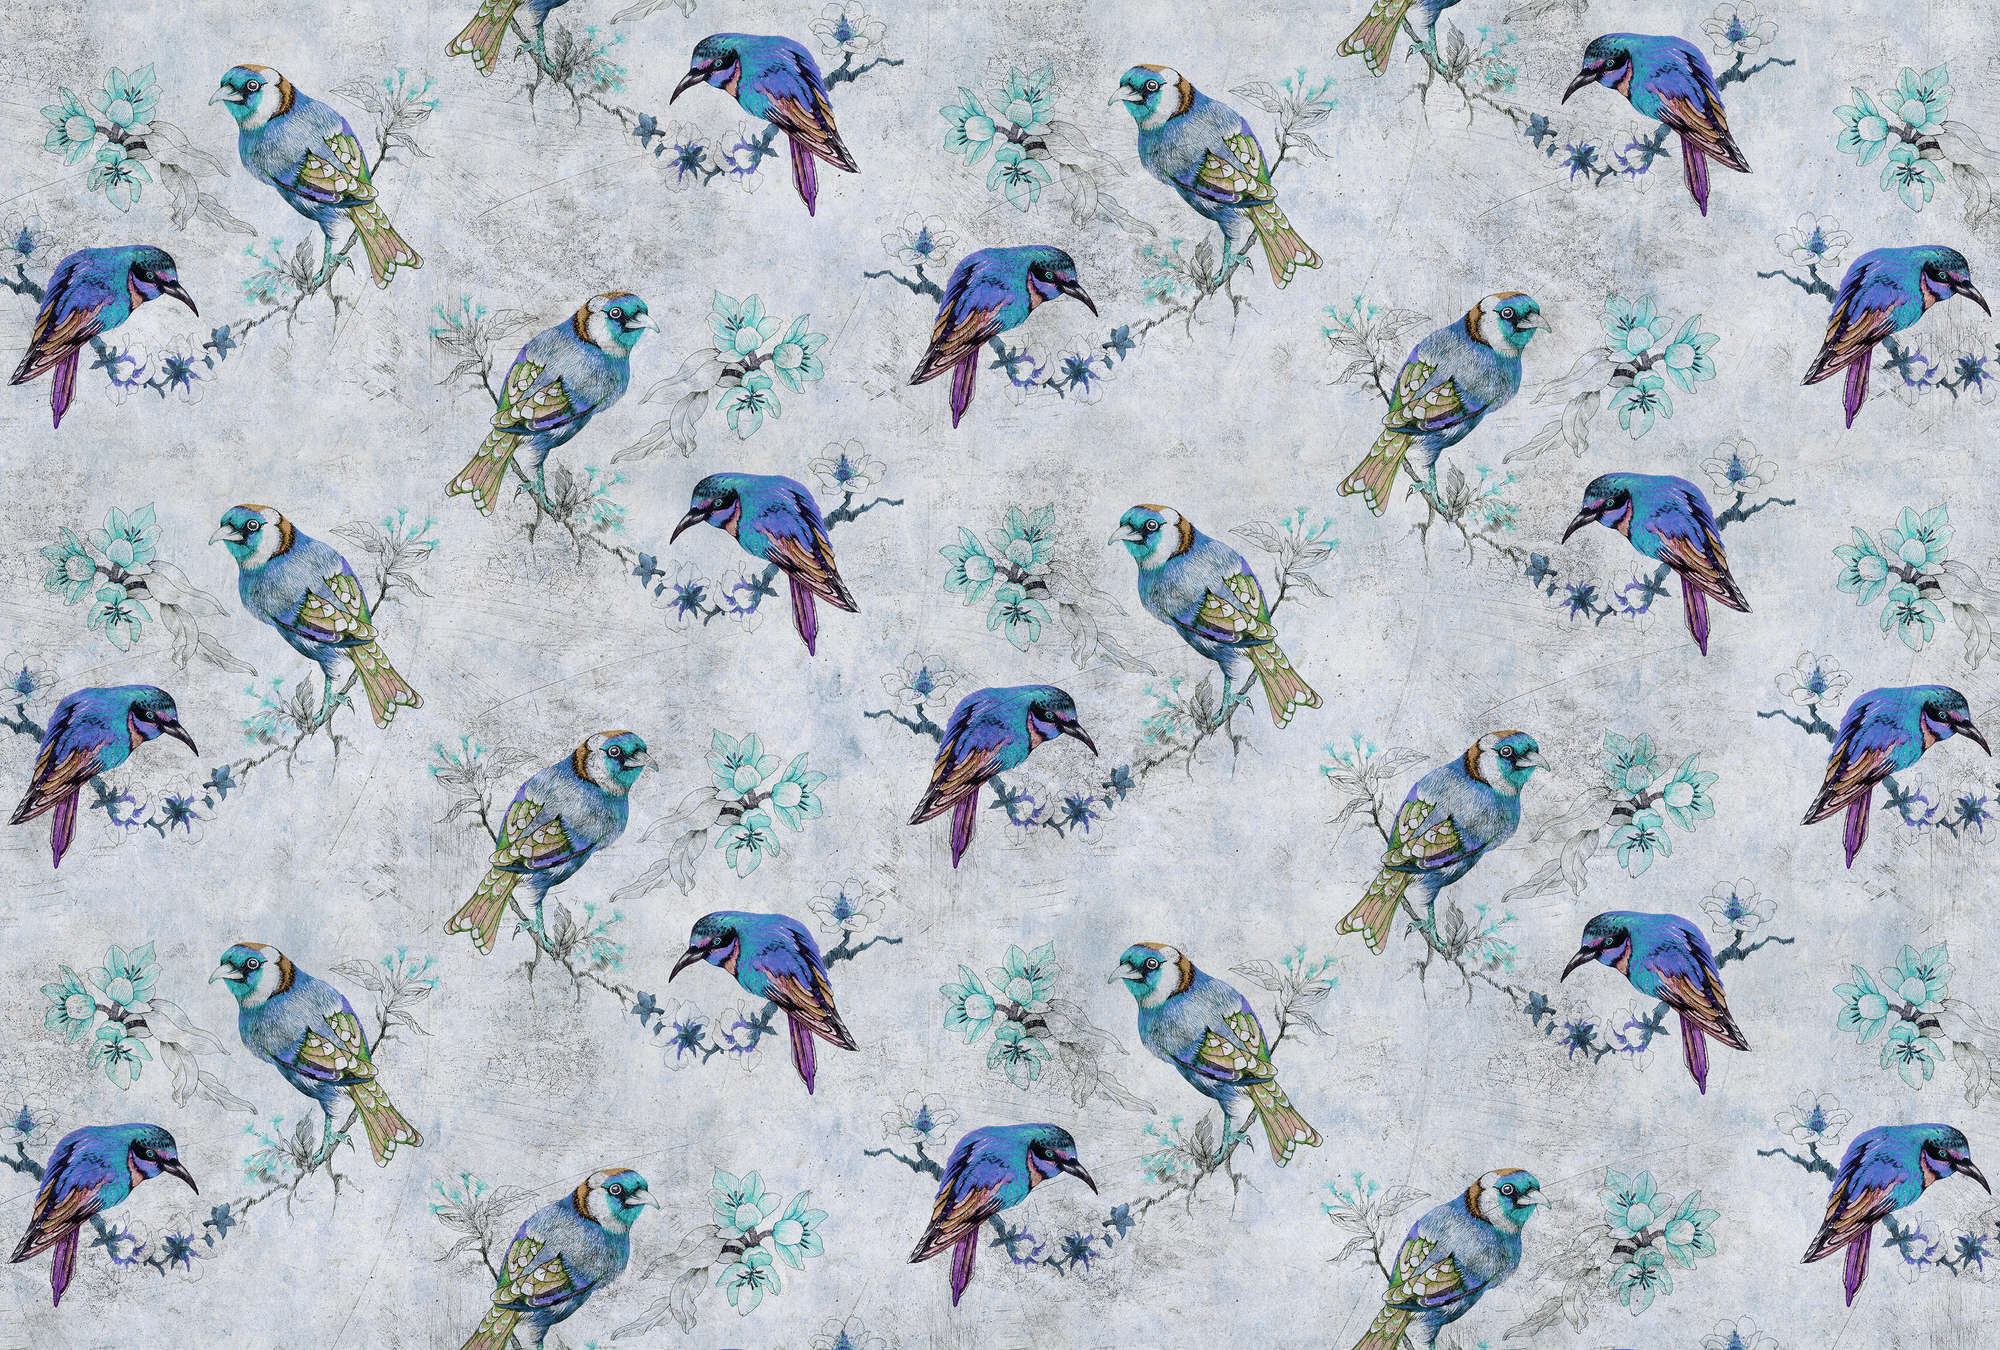             Love birds 1 - Fotomurali con disegno di uccelli in stile graffiato - Blu, Grigio | Pile liscio Premium
        